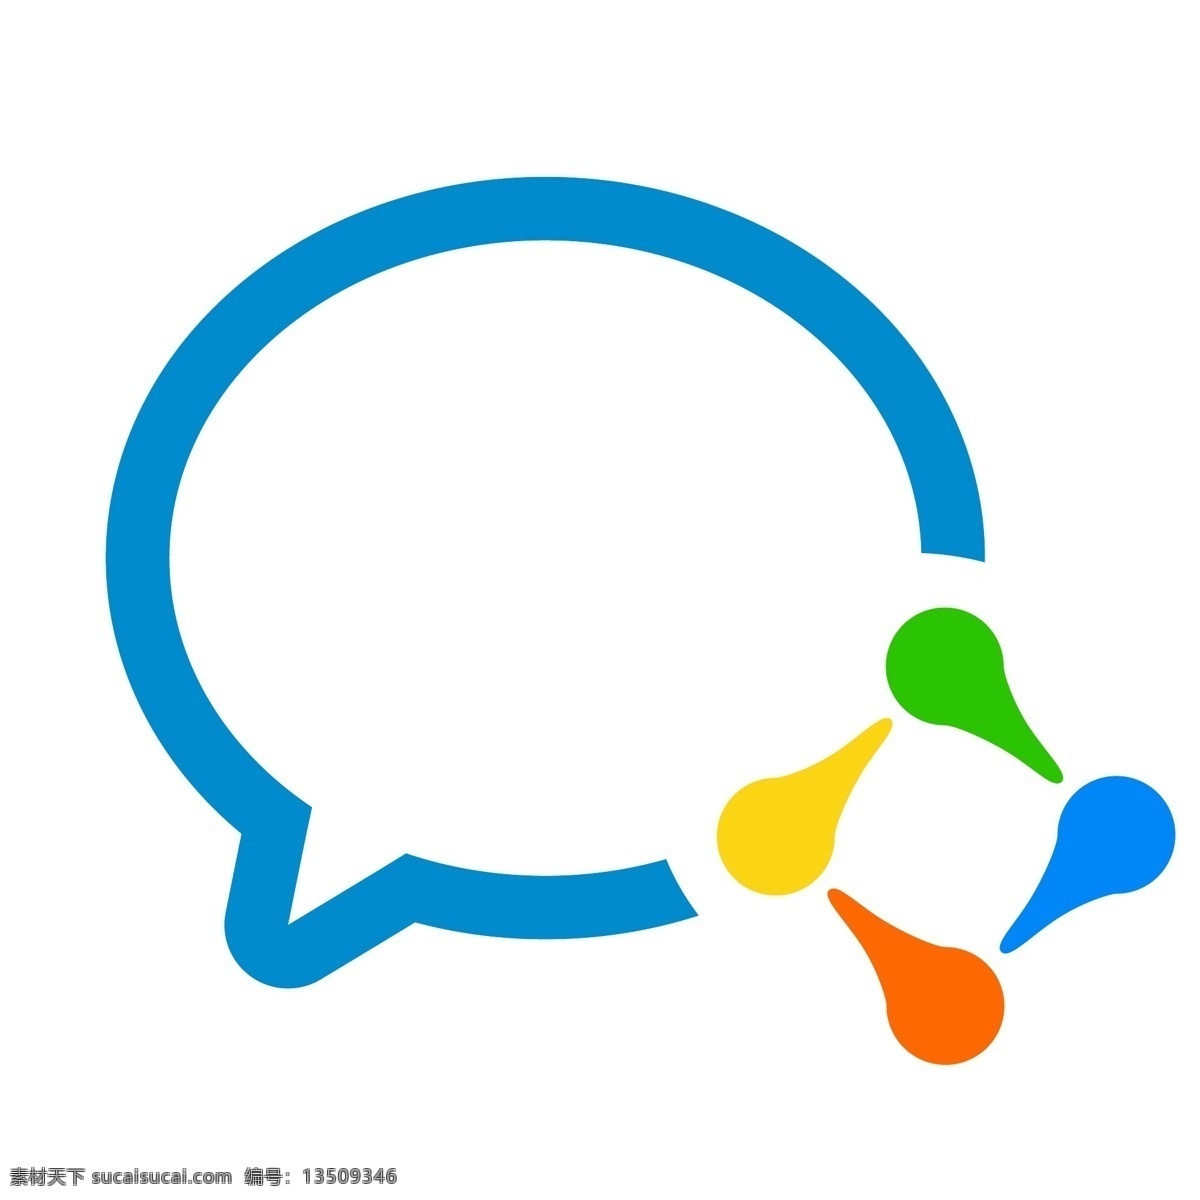 企业微信 微信 企业 微 信 logo 微信logo 企业号 号 标志图标 标志